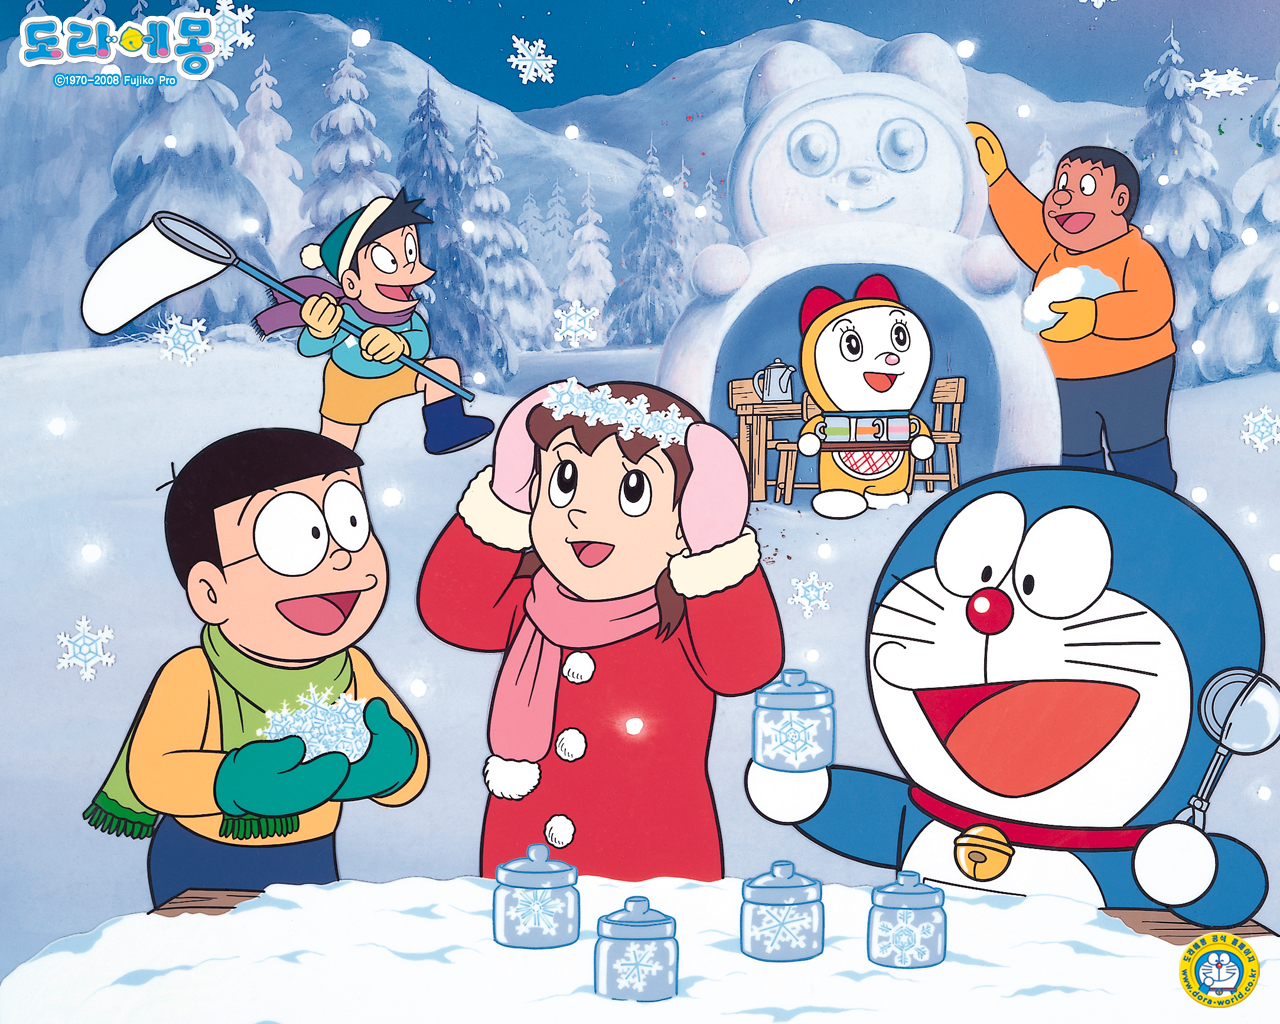 Hãy cùng nhau tìm hiểu về những tác phẩm anime đầy màu sắc và tinh tế của nhân vật Doraemon. Bạn sẽ được thưởng thức những hình ảnh đặc sắc của Doraemon trong các tác phẩm anime đầy màu sắc và hấp dẫn này.